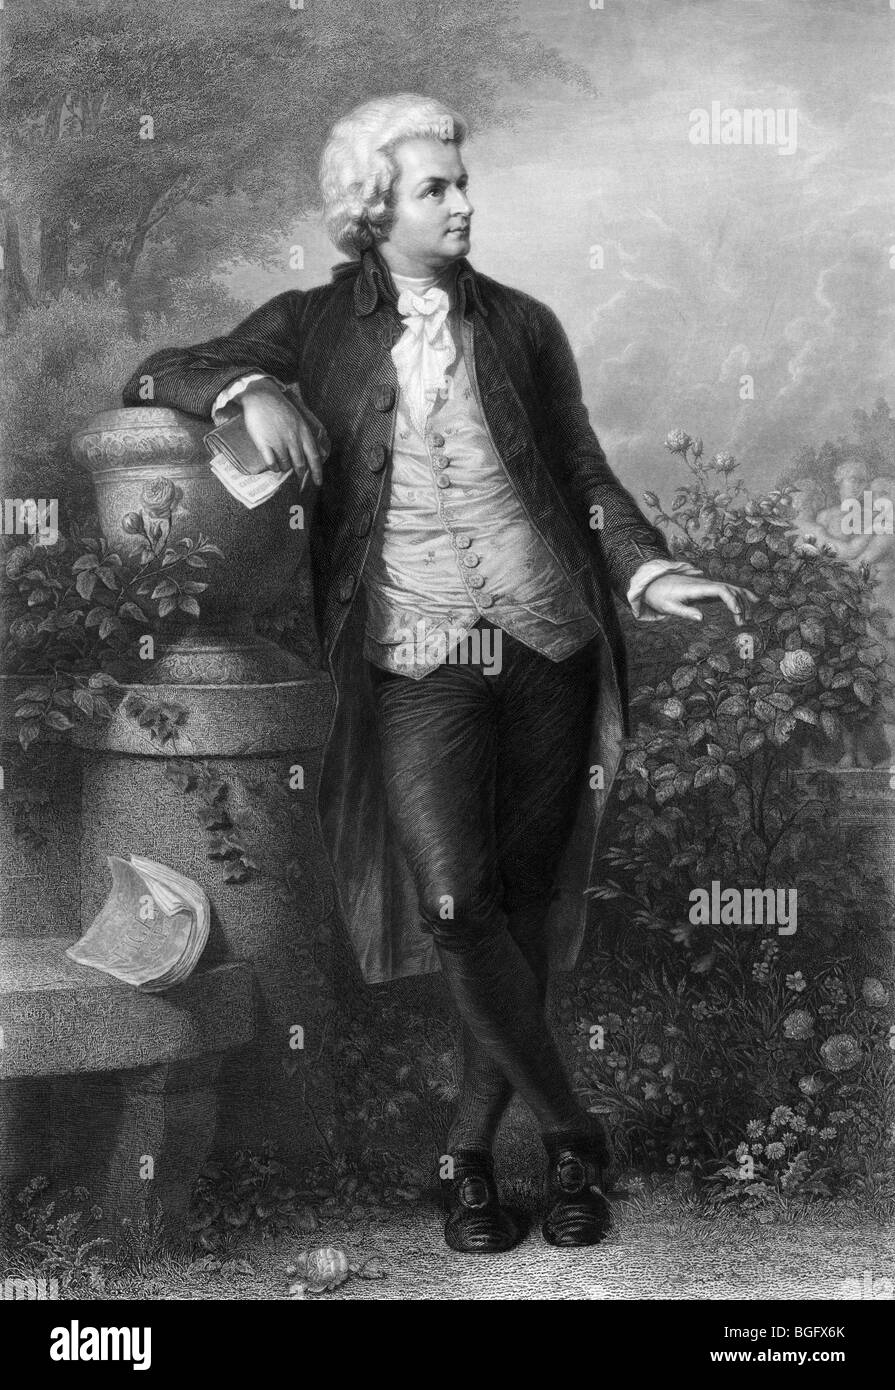 Undatierte 19. Jahrhundert Porträt Gravur der produktivsten und einflussreichsten österreichischen Komponisten Wolfgang Amadeus Mozart (1756-1791). Stockfoto